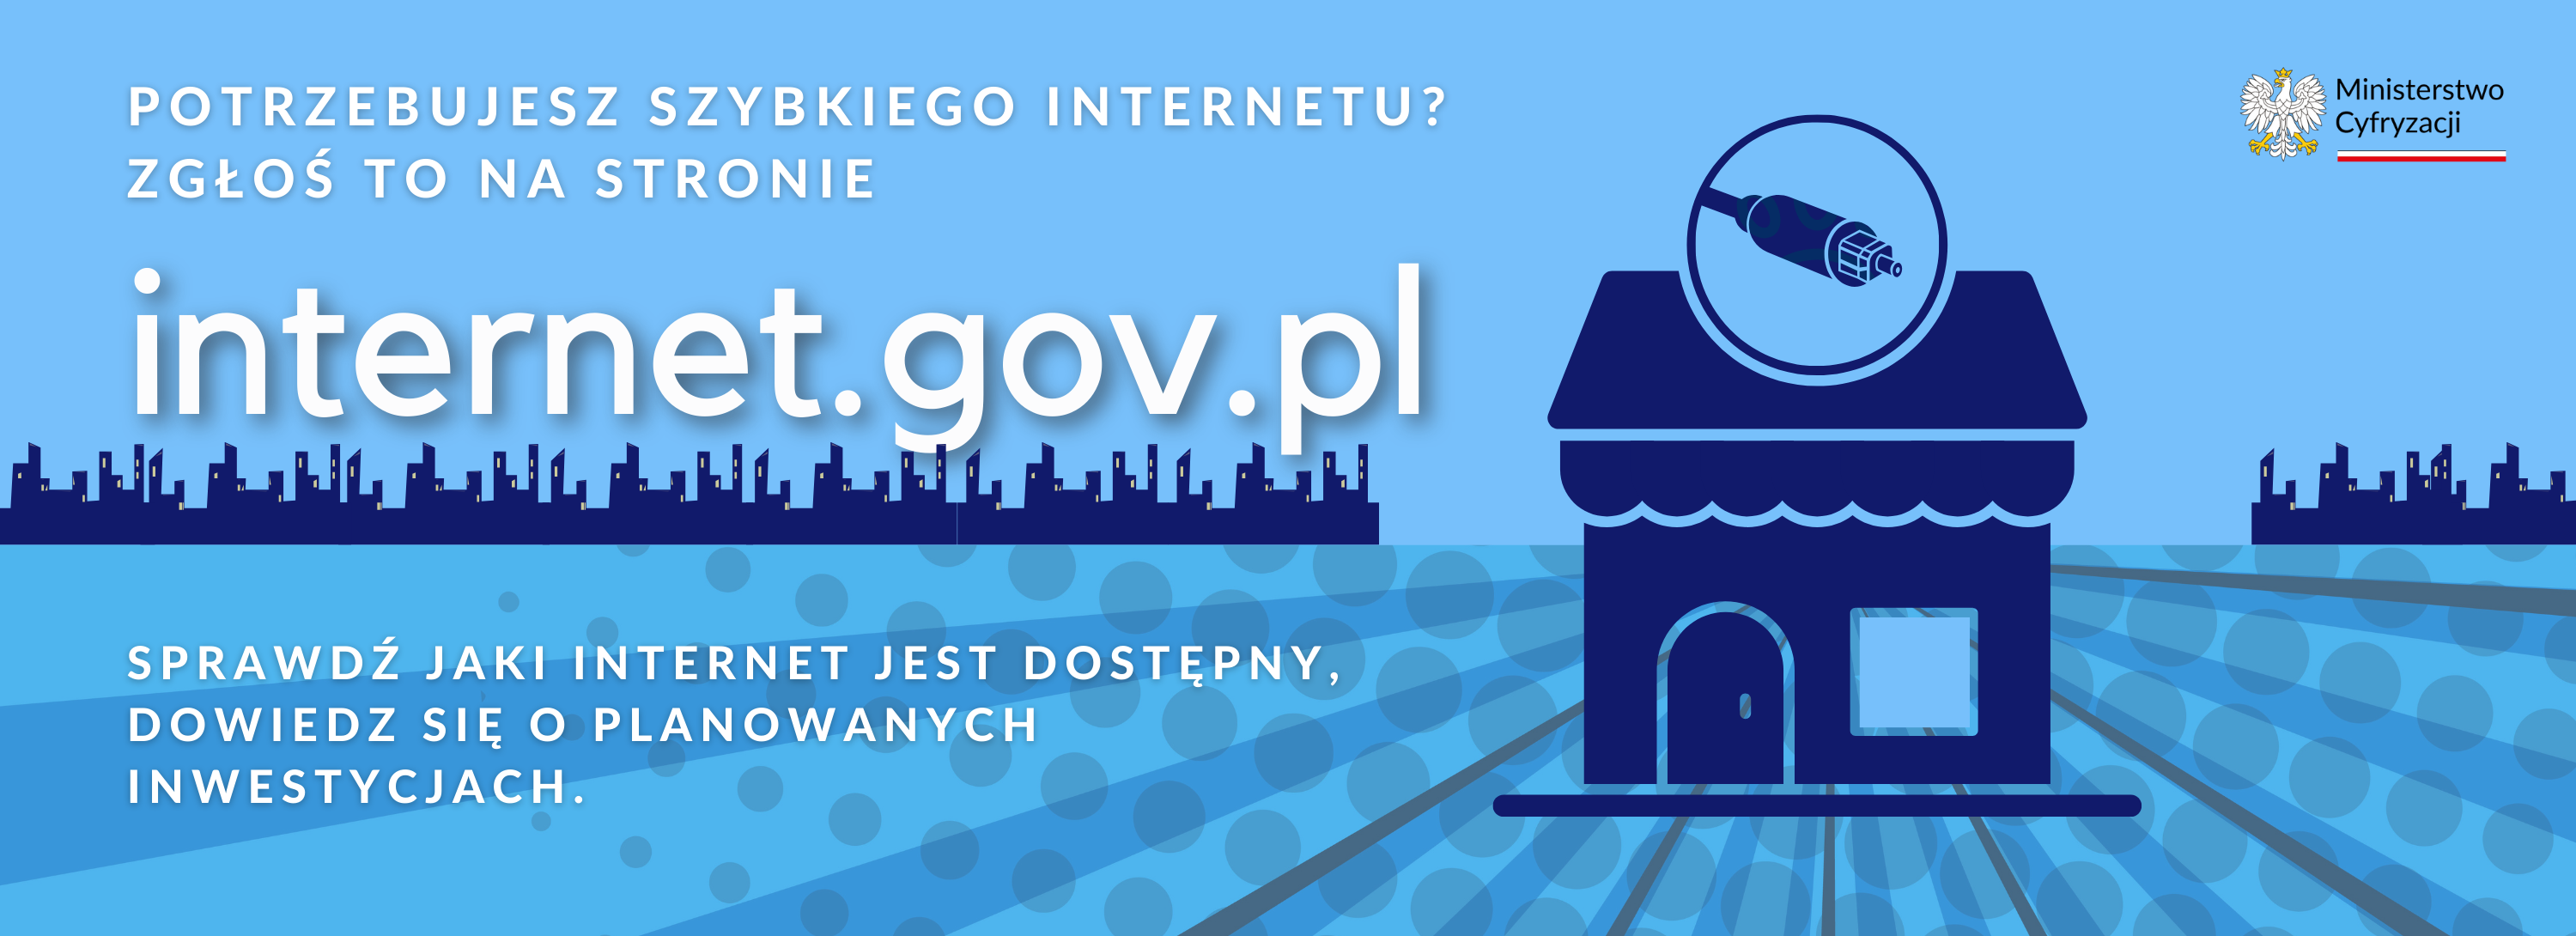 baner przedstawiający grafikę zachęcającą do wejścia na stronę internet.gov.pl